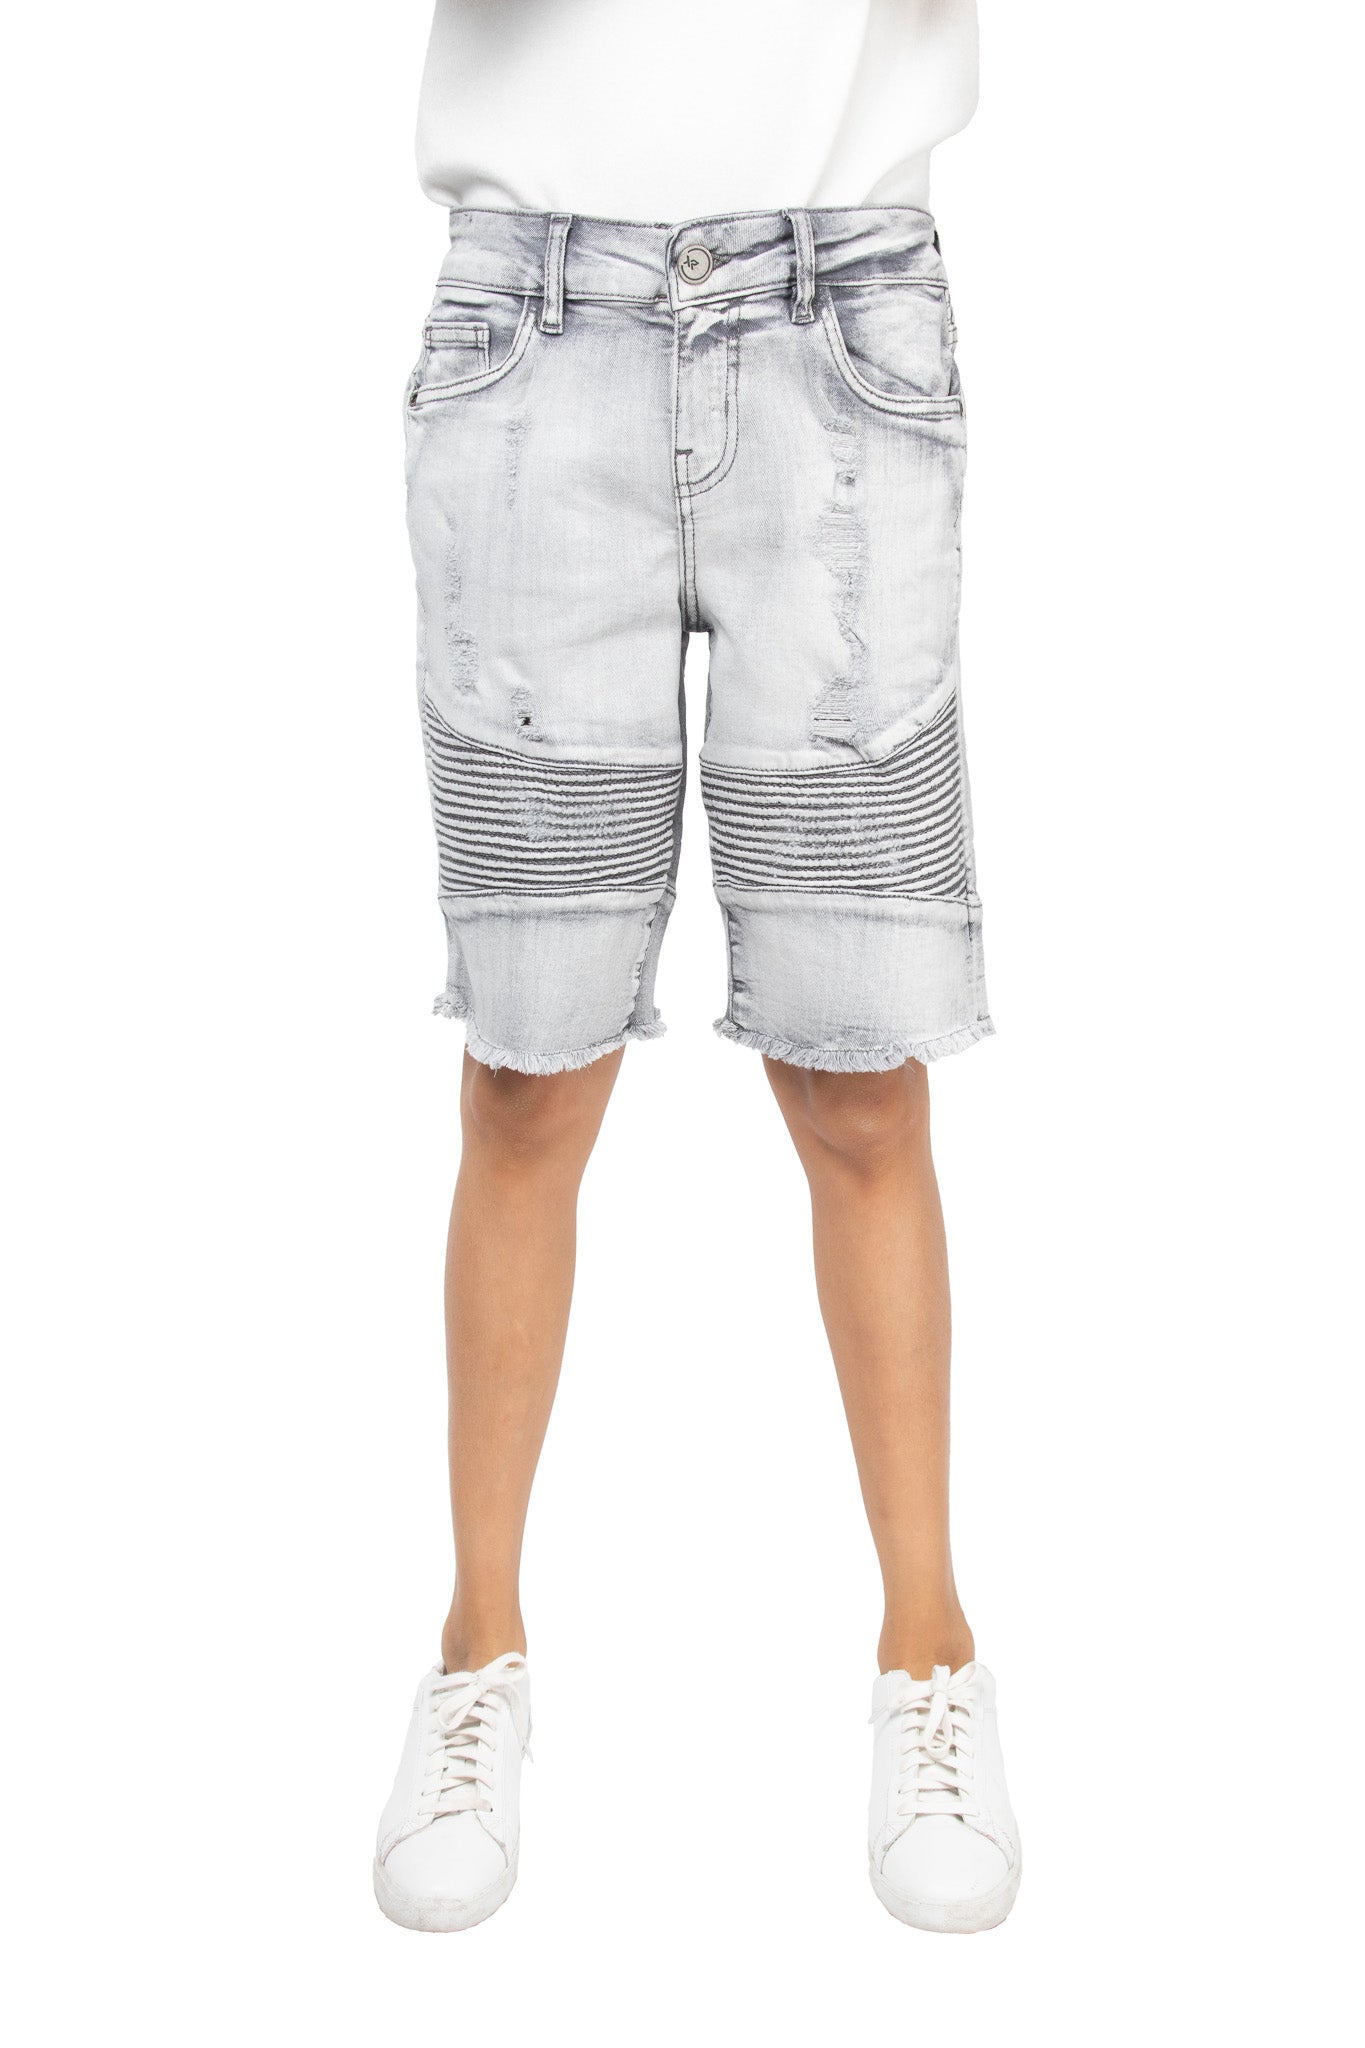 work pants for men Mens Casual Shorts Spring Pocket Sports Summer  Bodybuilding Denim Short Pants Jeans - Walmart.com